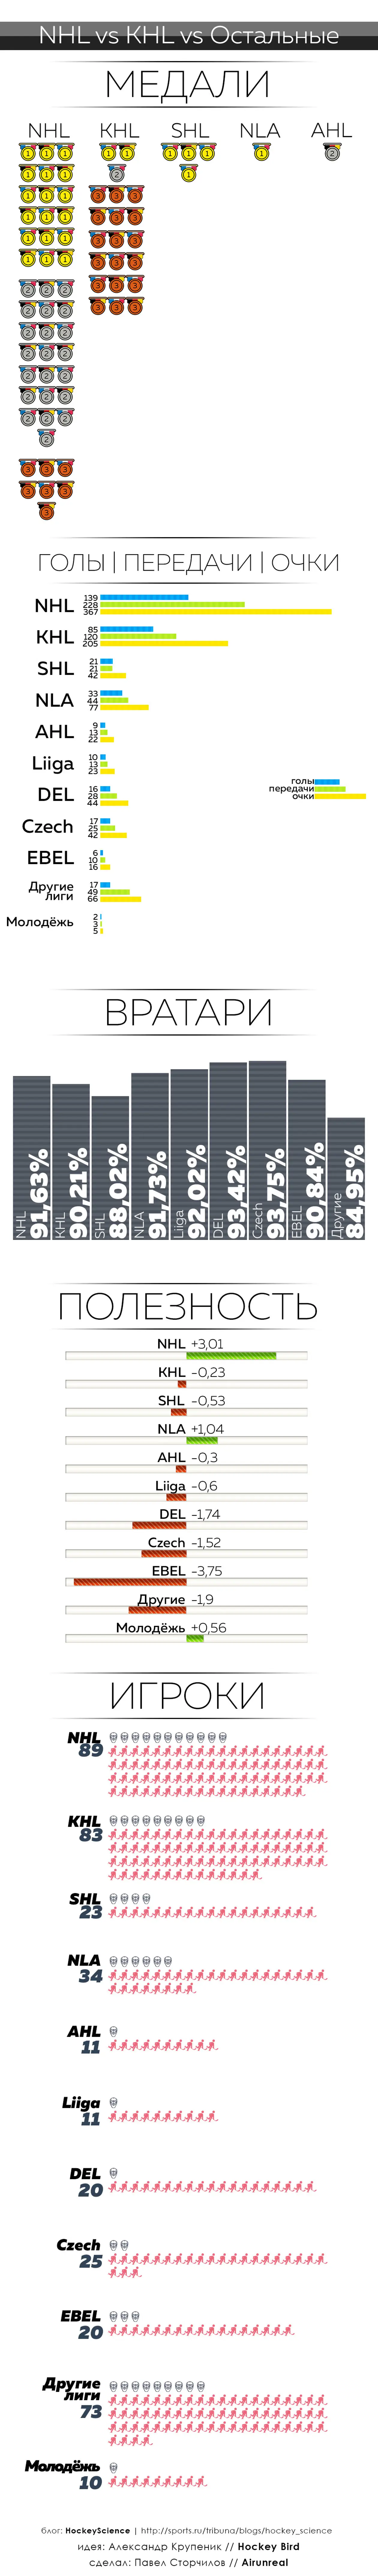 Хоккейные лиги на ЧМ. Инфографика